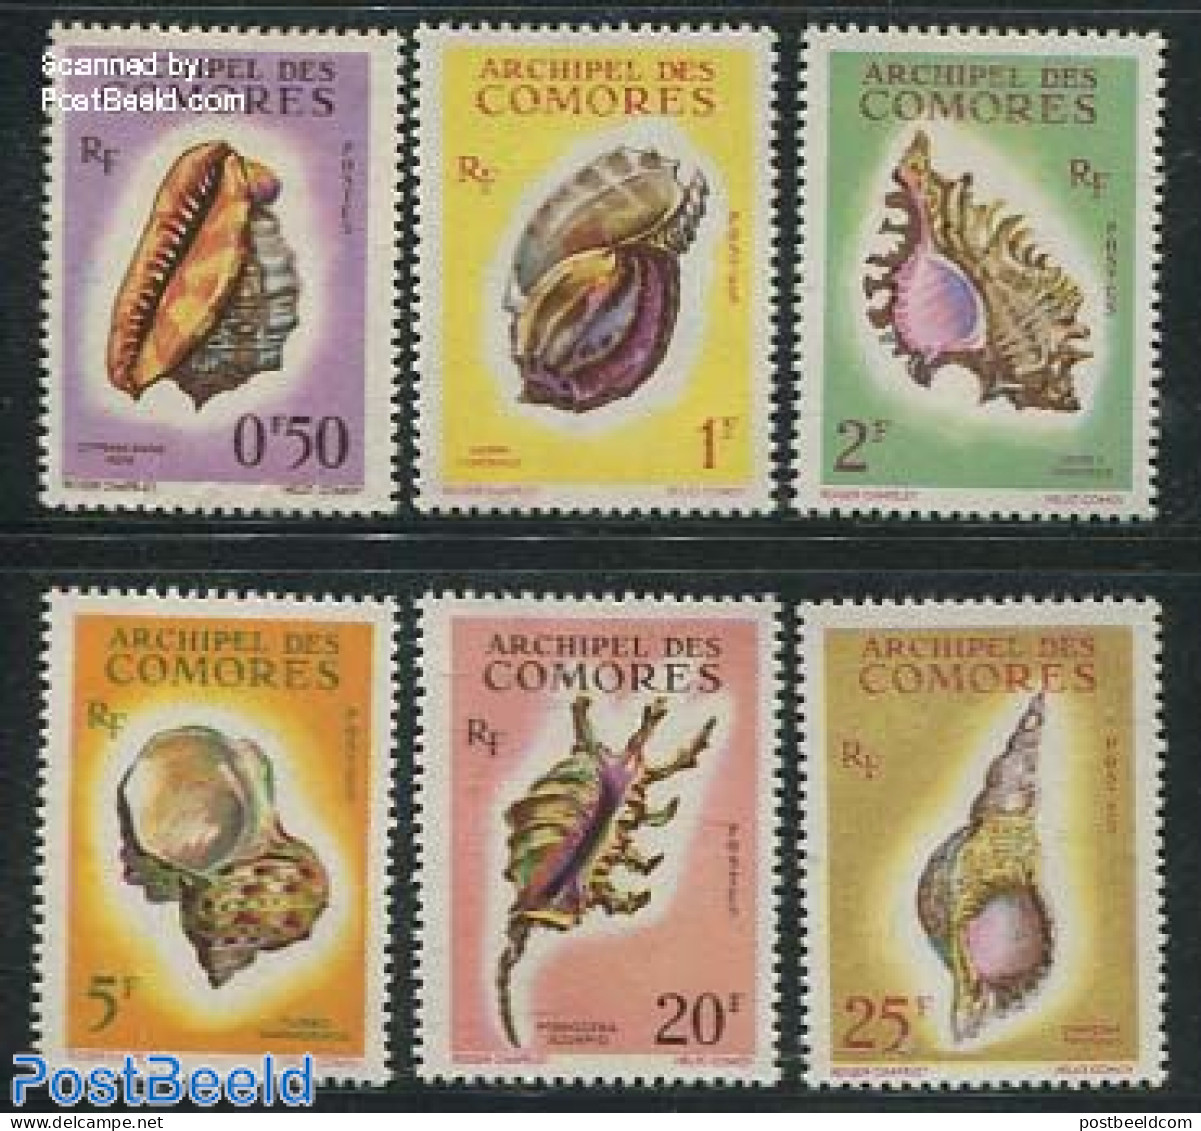 Comoros 1962 Shells 6v, Mint NH, Nature - Shells & Crustaceans - Mundo Aquatico